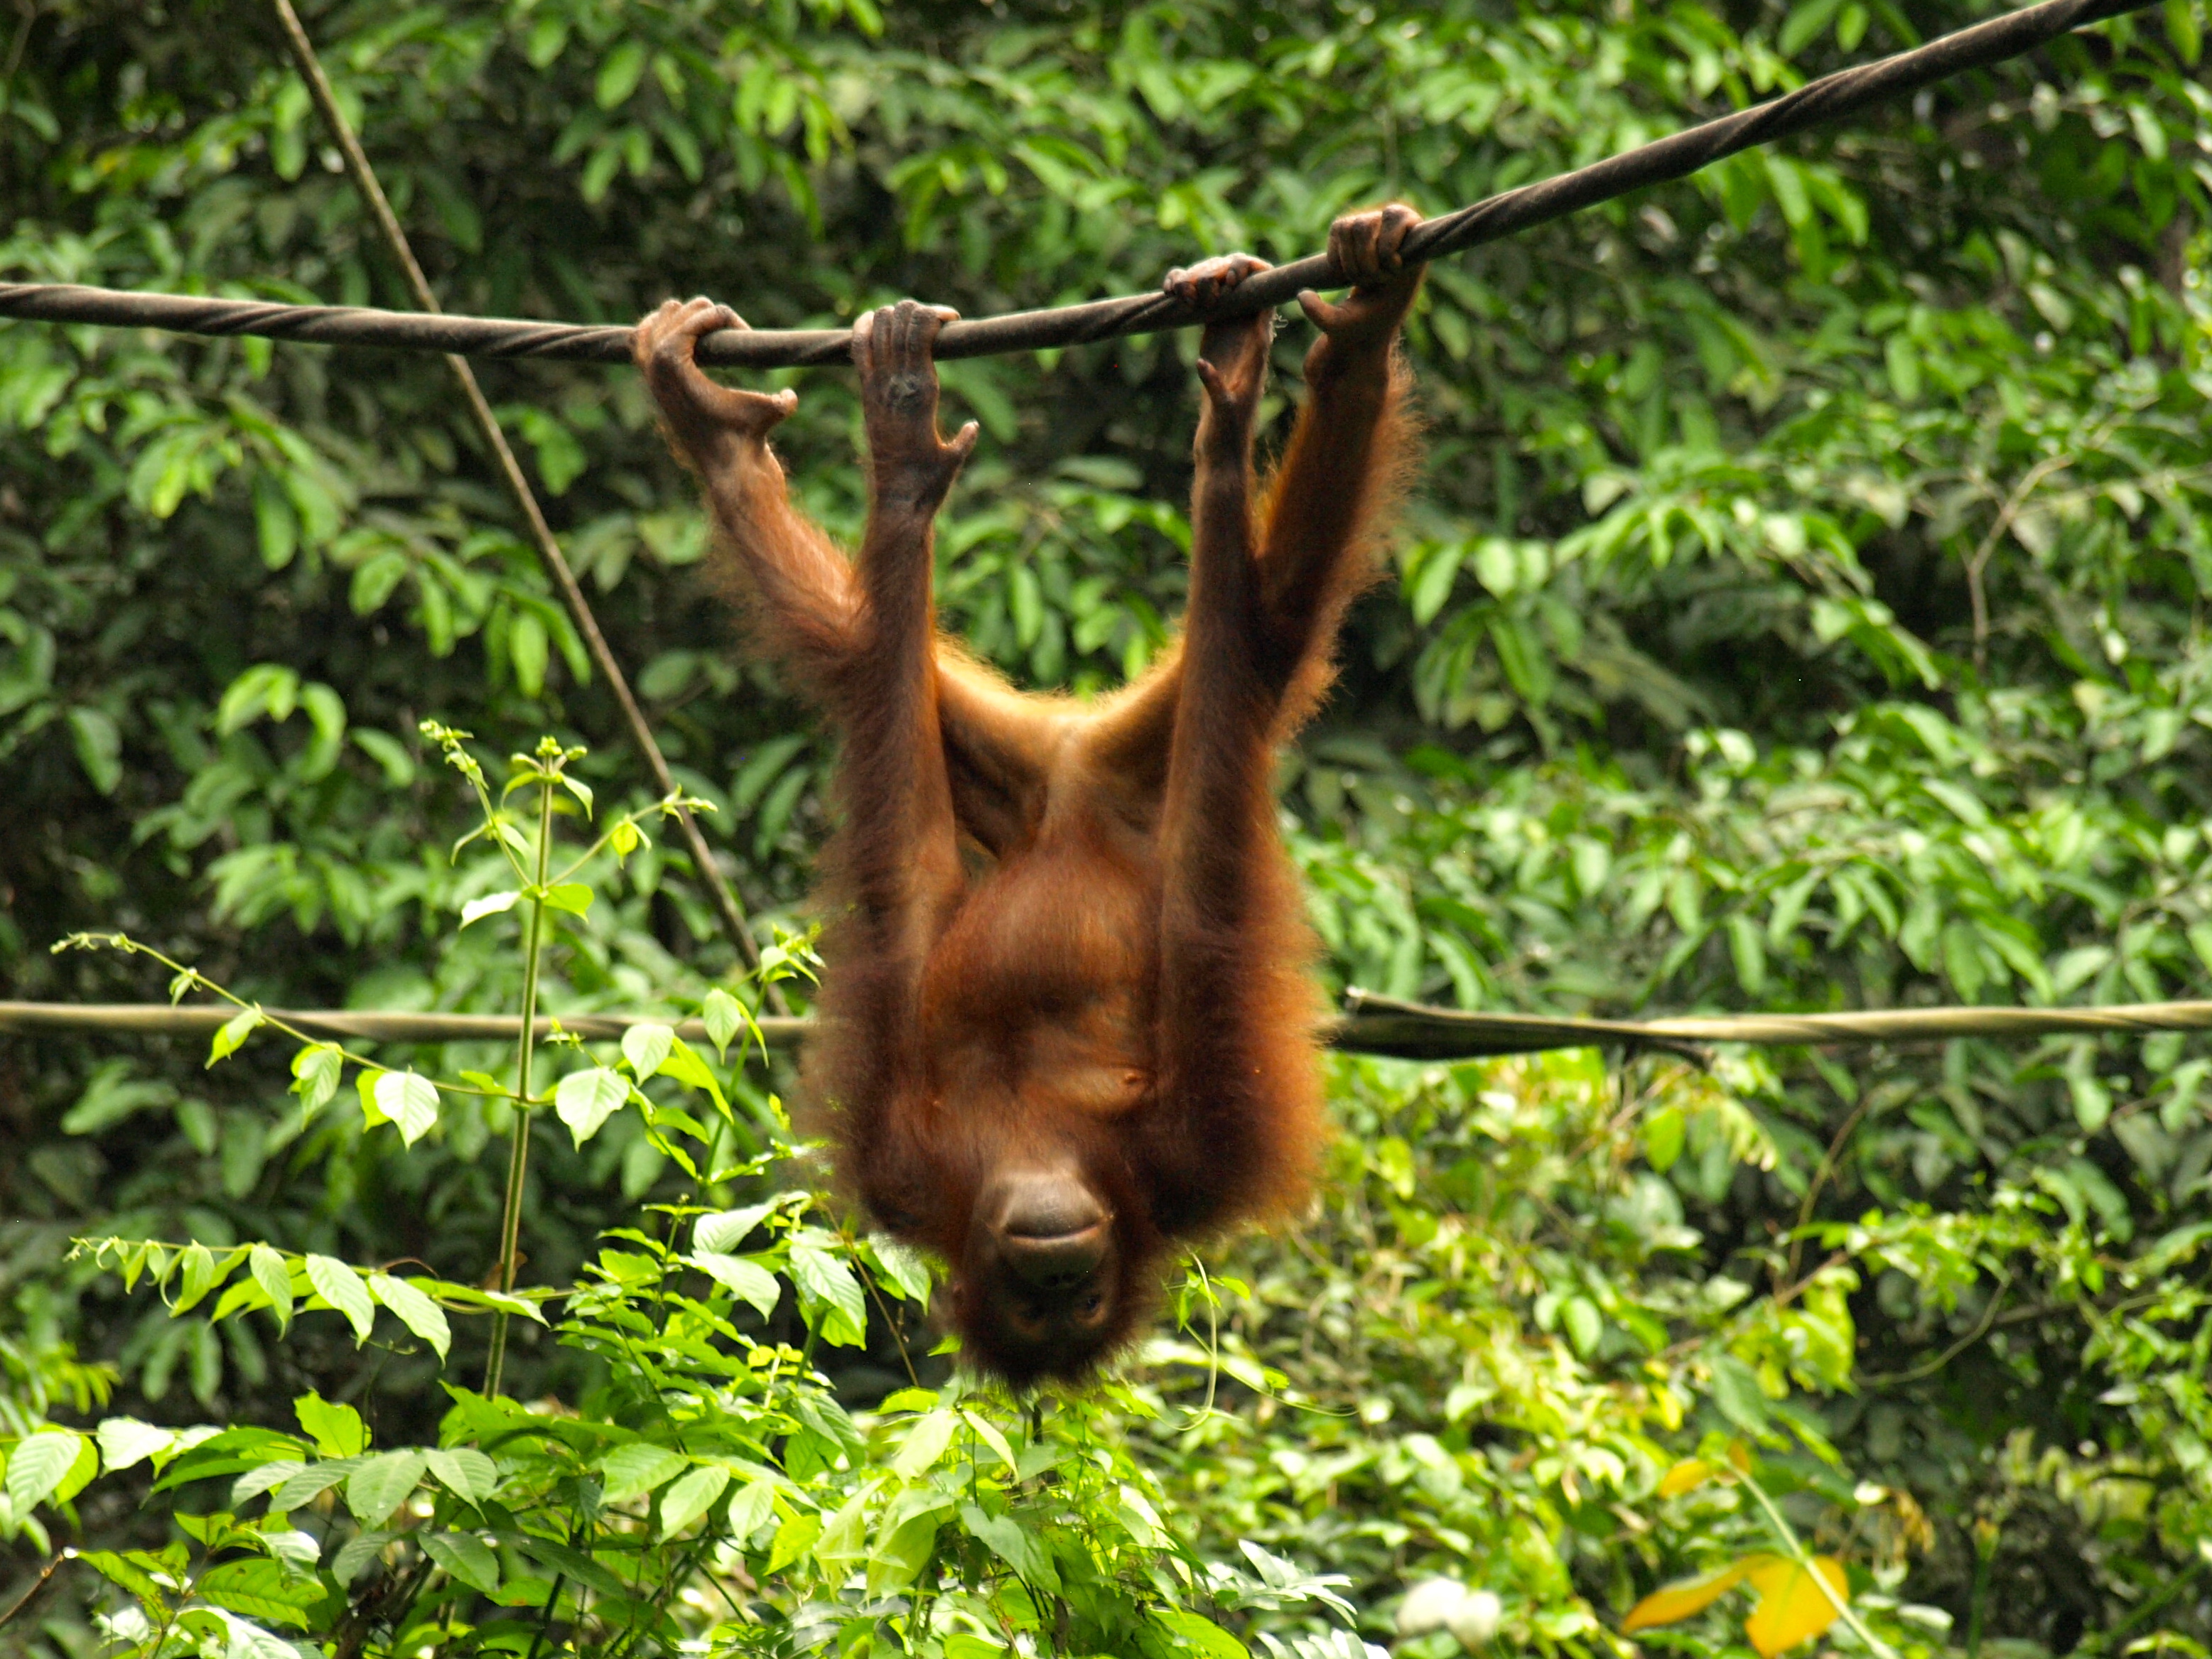 Висеть или весеть. Лапа орангутана. Джунгли Борнео. Орангутанг на дереве. Орангутанг висит.